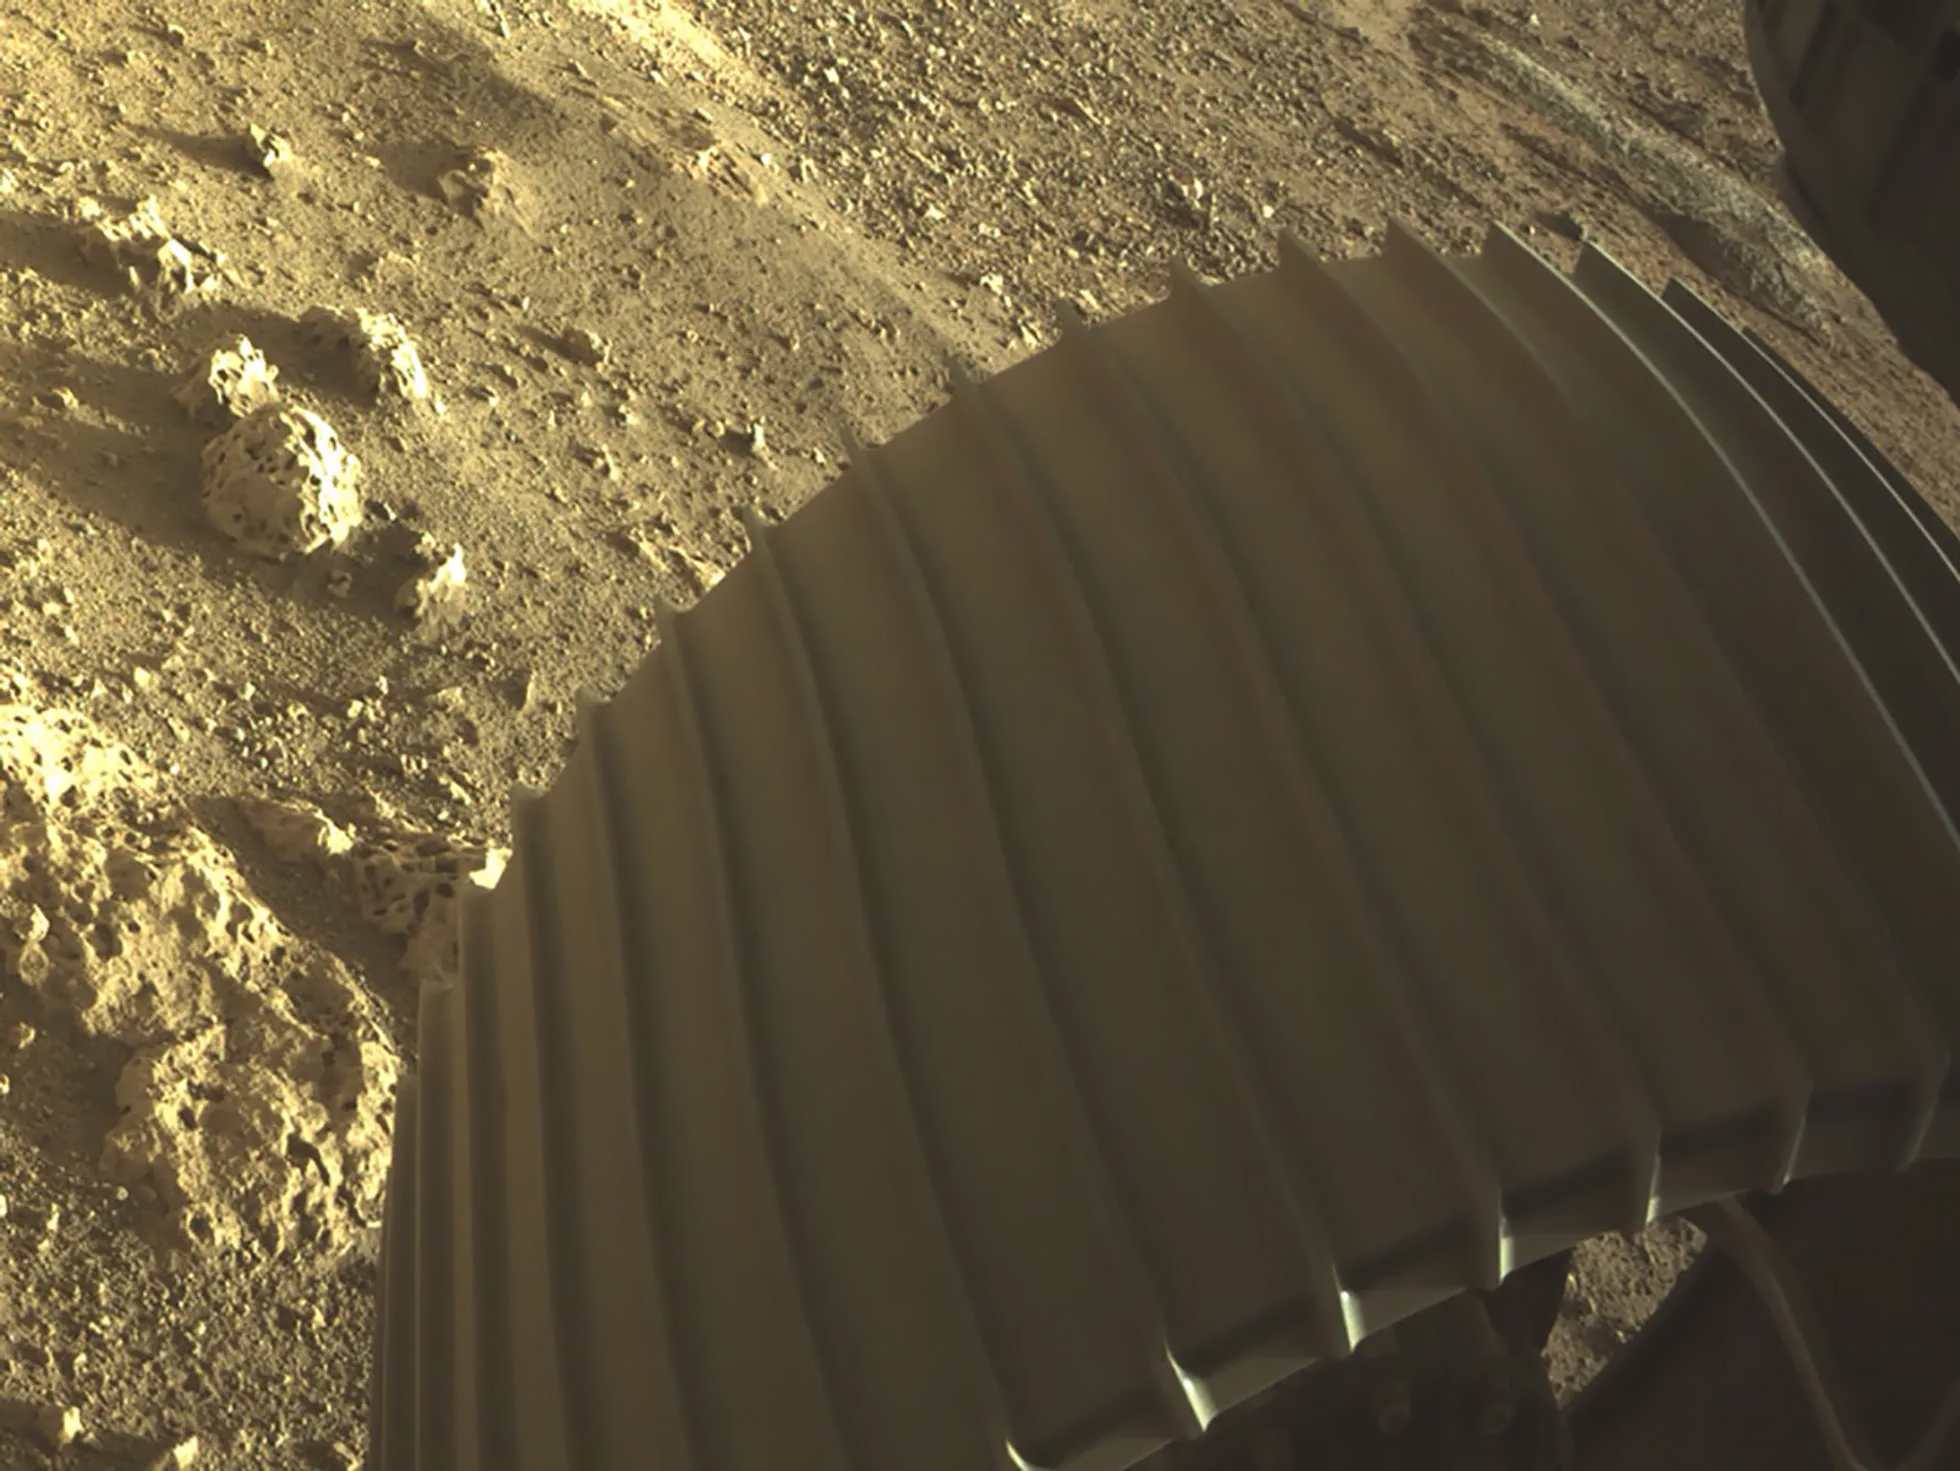 NASA показало цветные фото с Марса, снятые ровером Perseverance